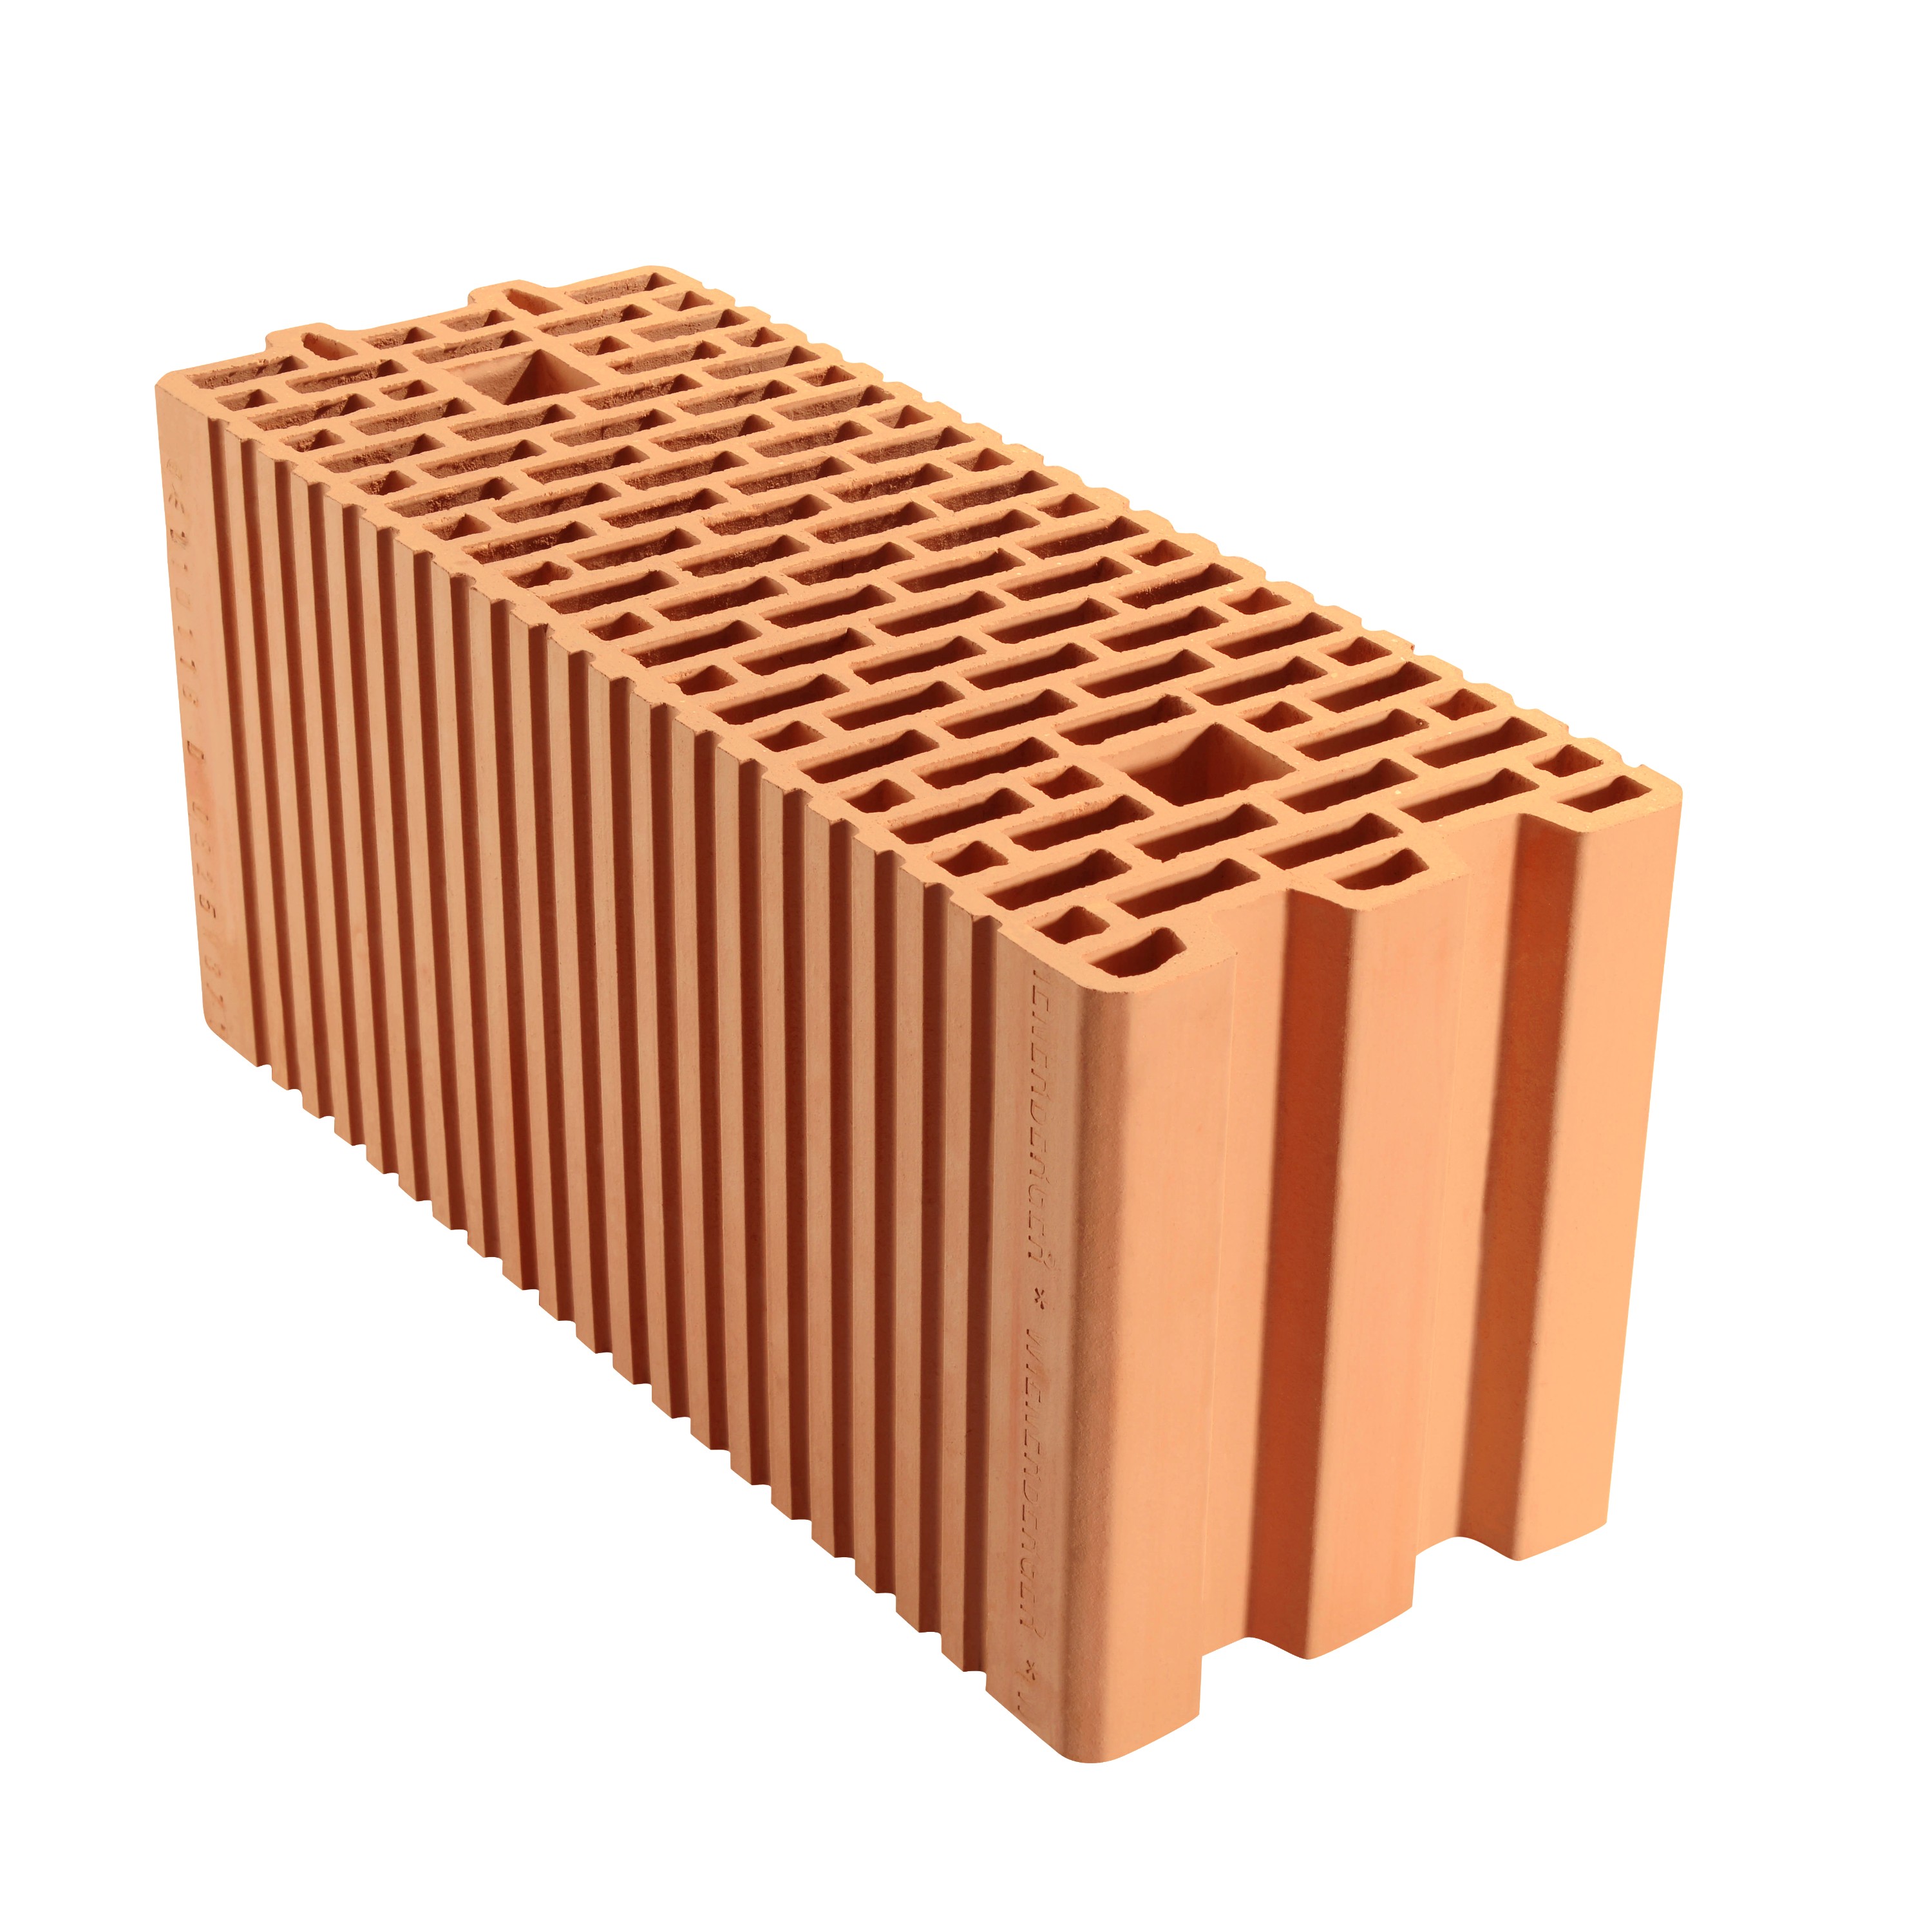 Bloc zidarie ceramic ( caramida) Porotherm PTH20 pentru constructie ziduri interioare grosime 20 cm